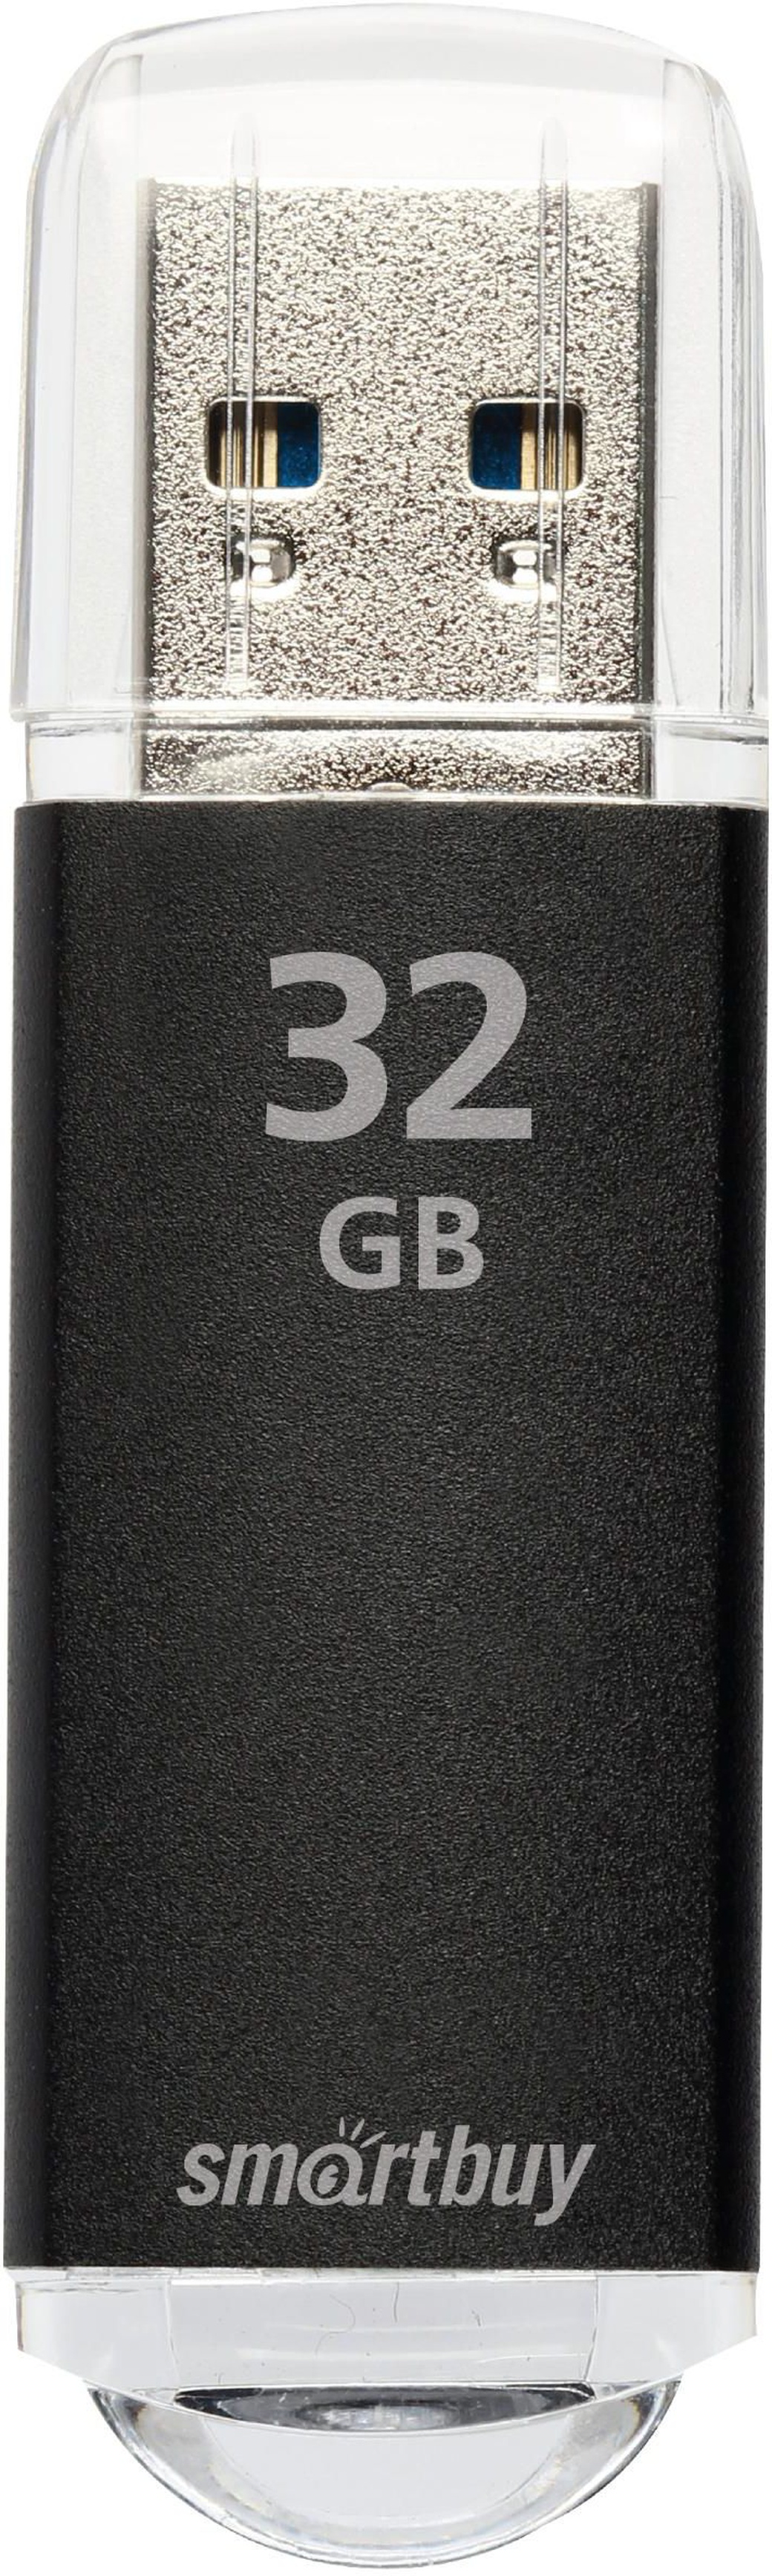 Флеш-накопитель Smartbuy V-Cut USB 2.0 32GB, черный фото